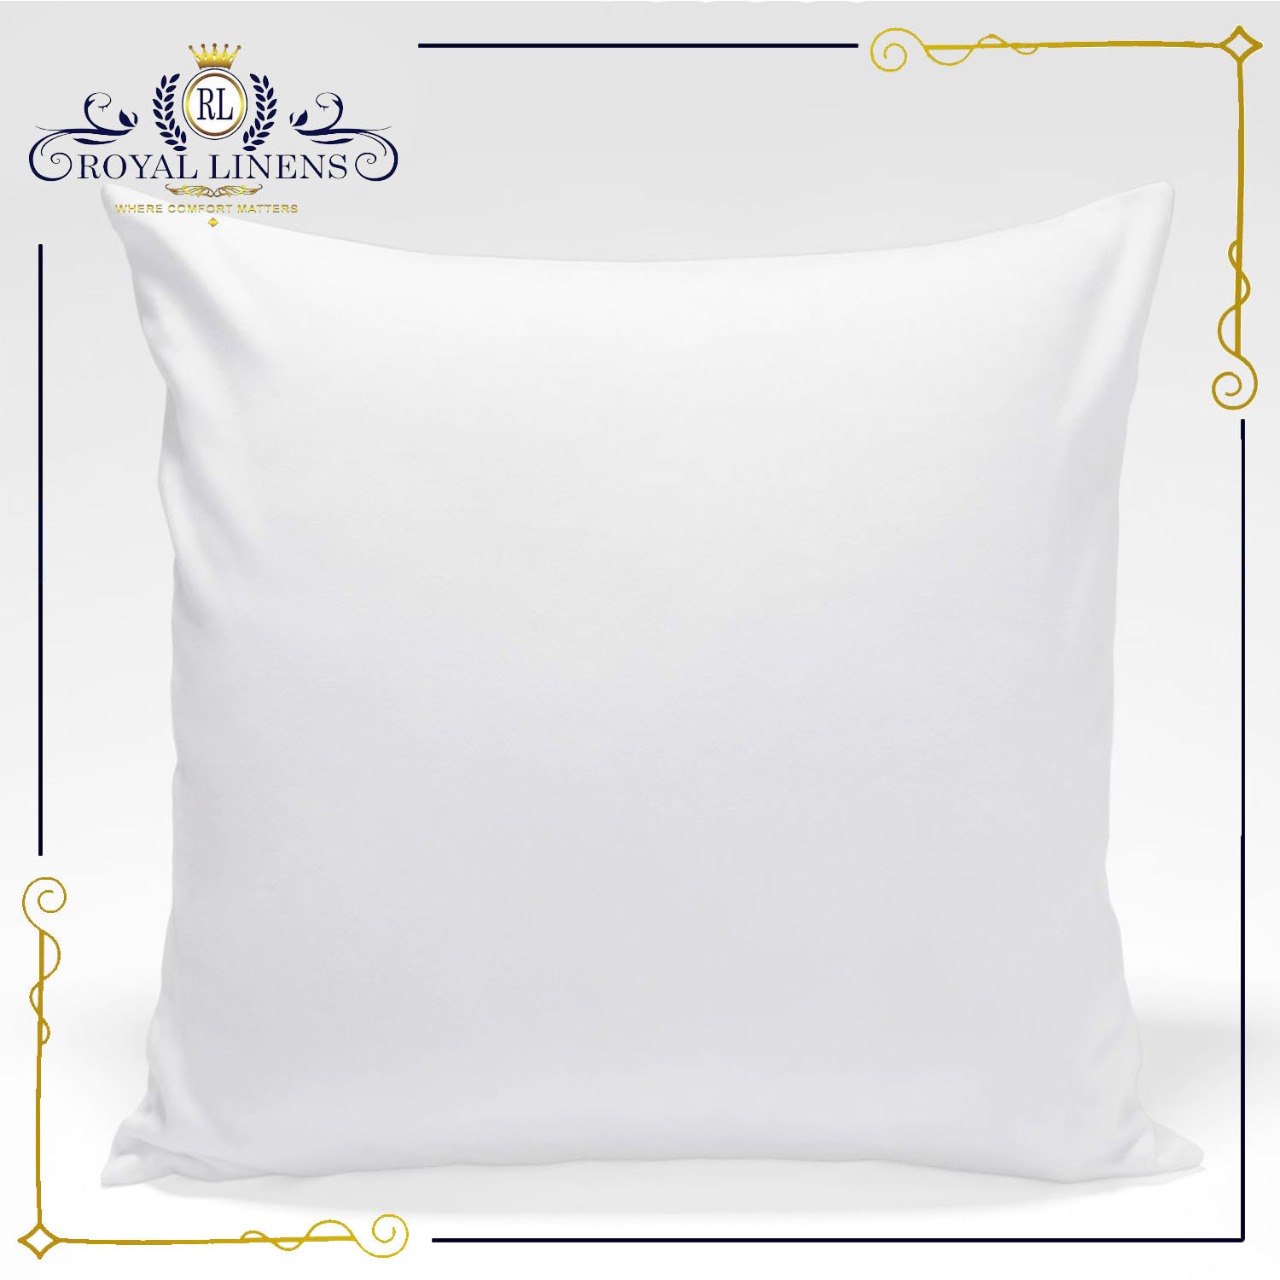 royal hotel bedding pillows